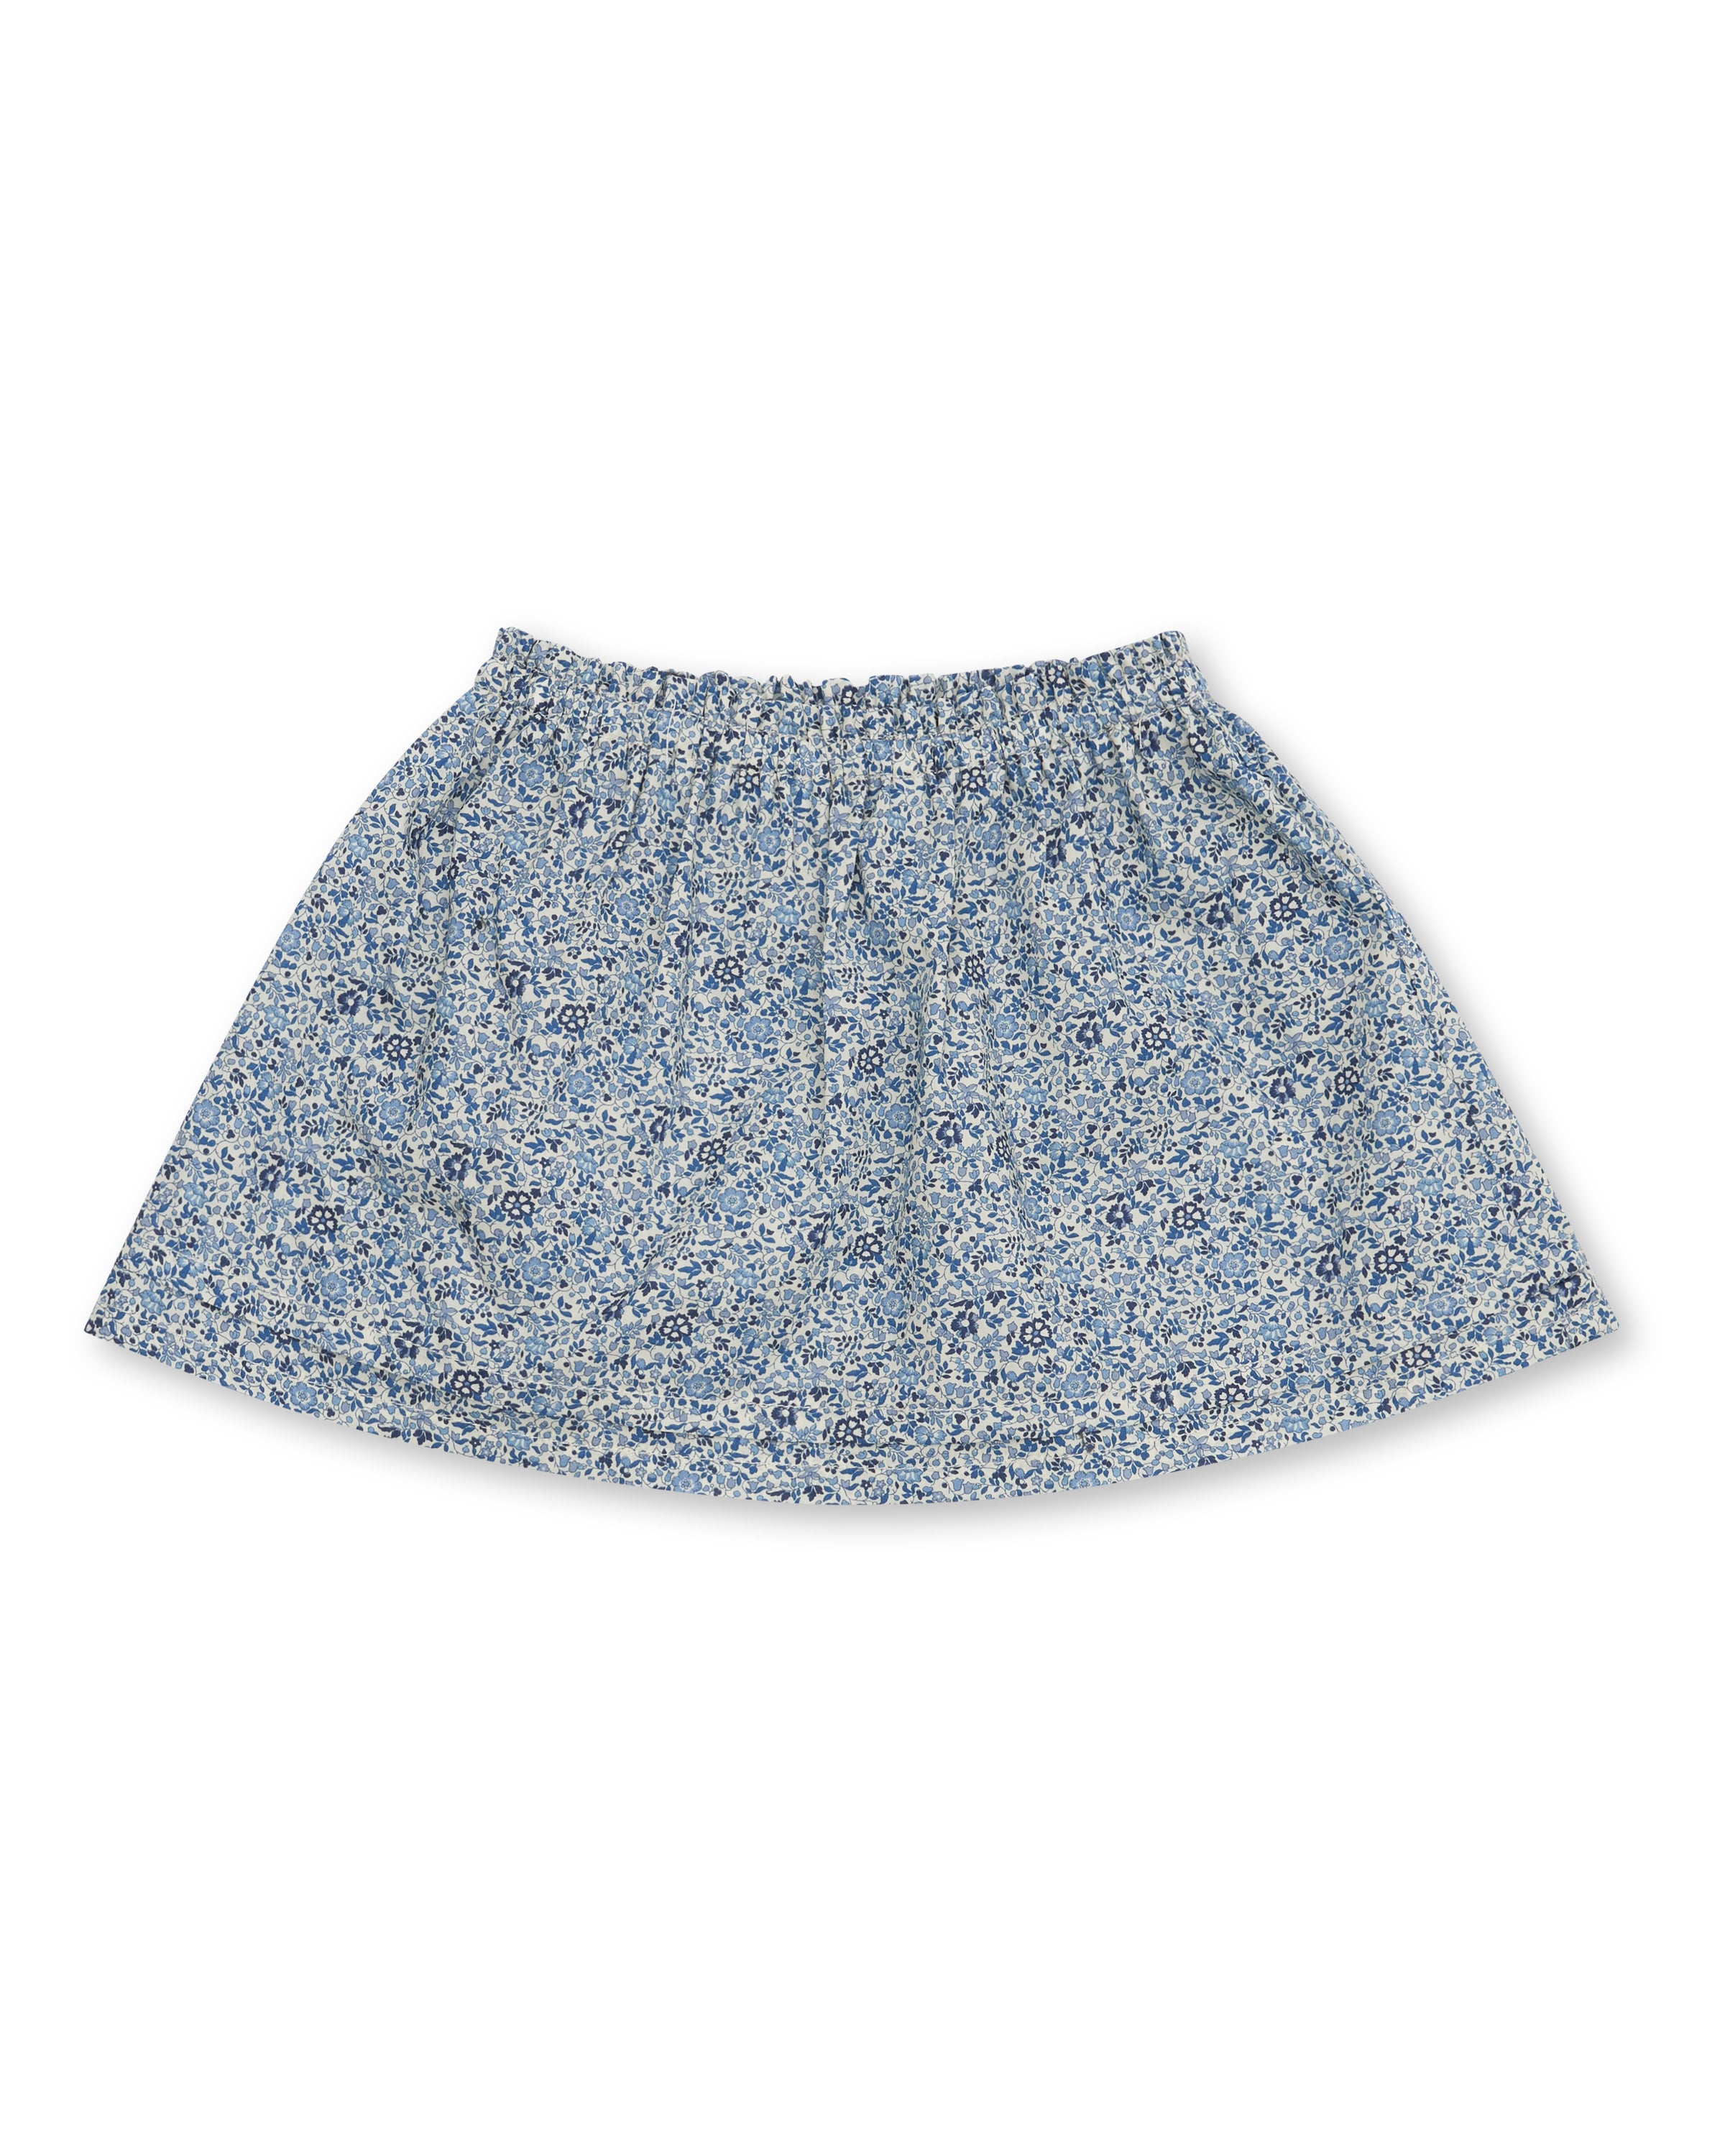 Girls' Designer Skirt, Blue Floral, ages 1 to 6.